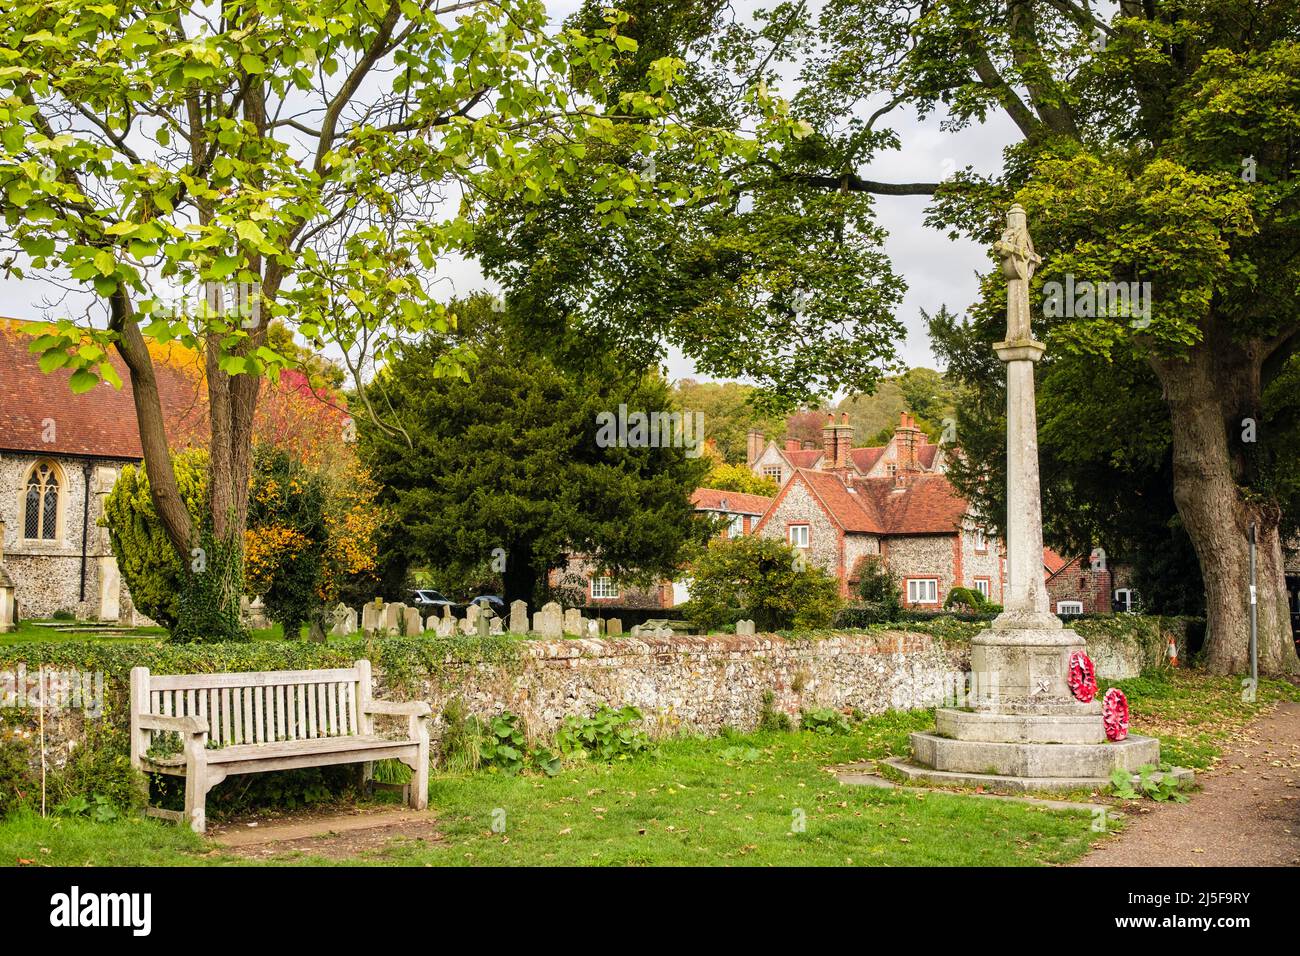 Sede e monumento ai caduti fuori dalla chiesa nel centro storico del villaggio di Chilterns. Hambleden, Buckinghamshire, Inghilterra, Regno Unito, Gran Bretagna Foto Stock